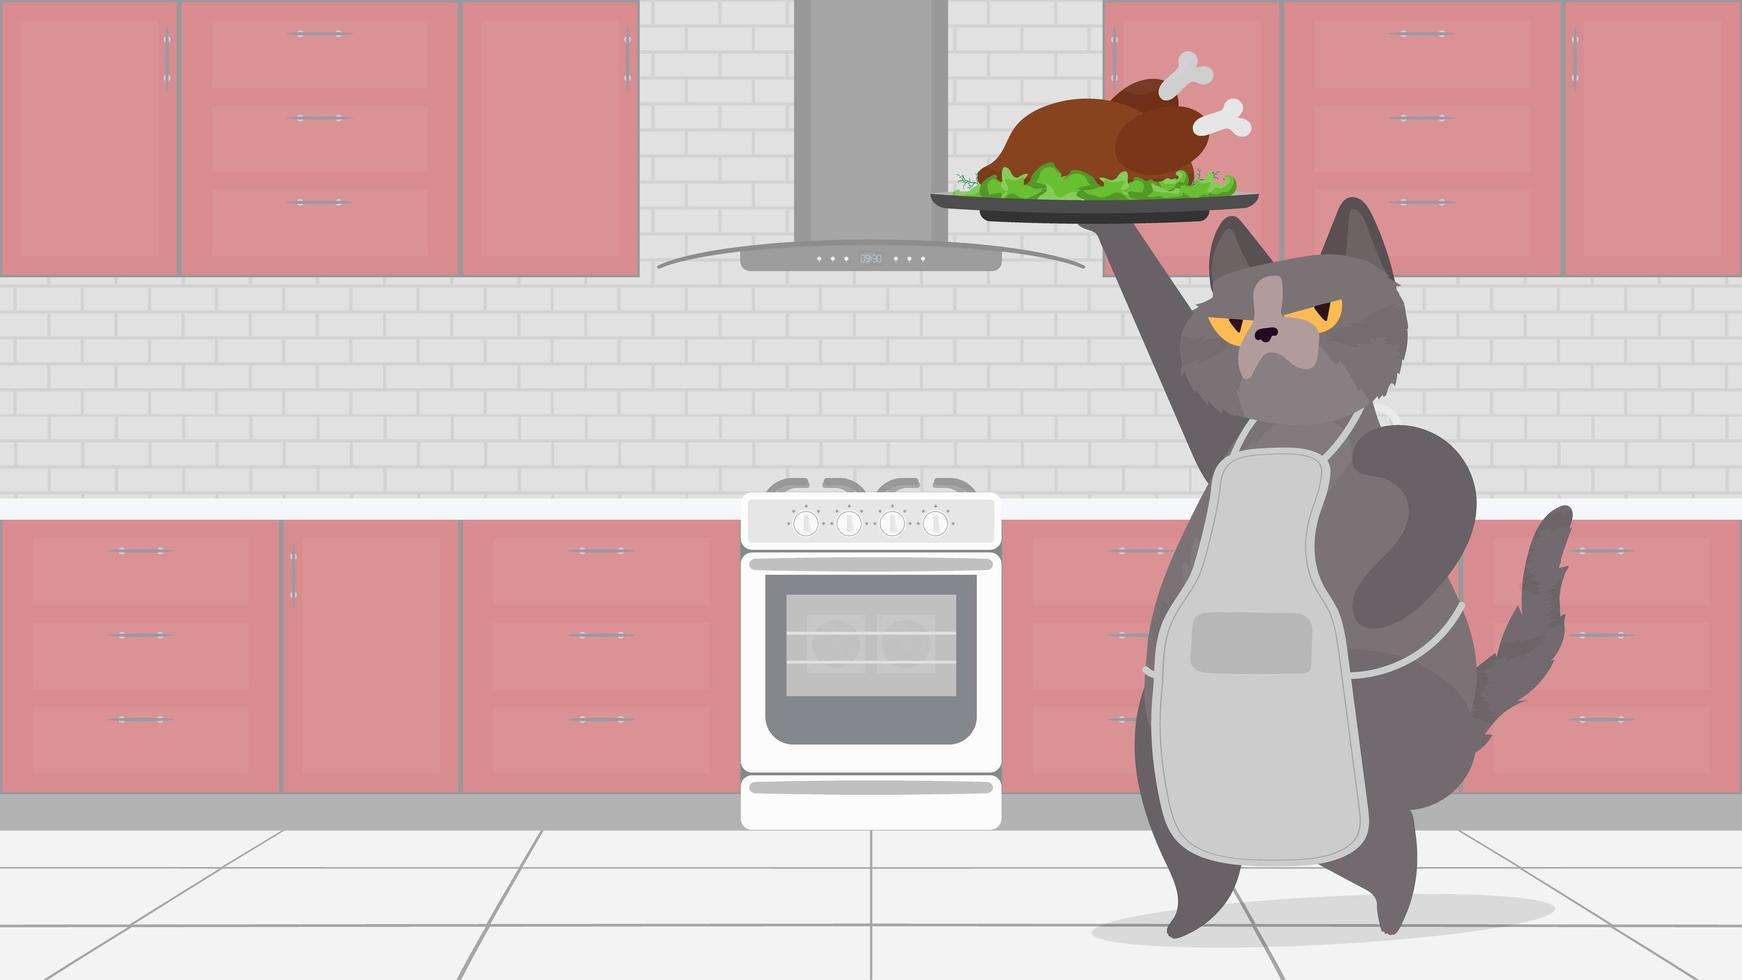 gato gracioso sostiene un pavo frito. un gato con una mirada divertida sostiene un pollo frito. Blog culinario o concepto de vlog. vector. vector